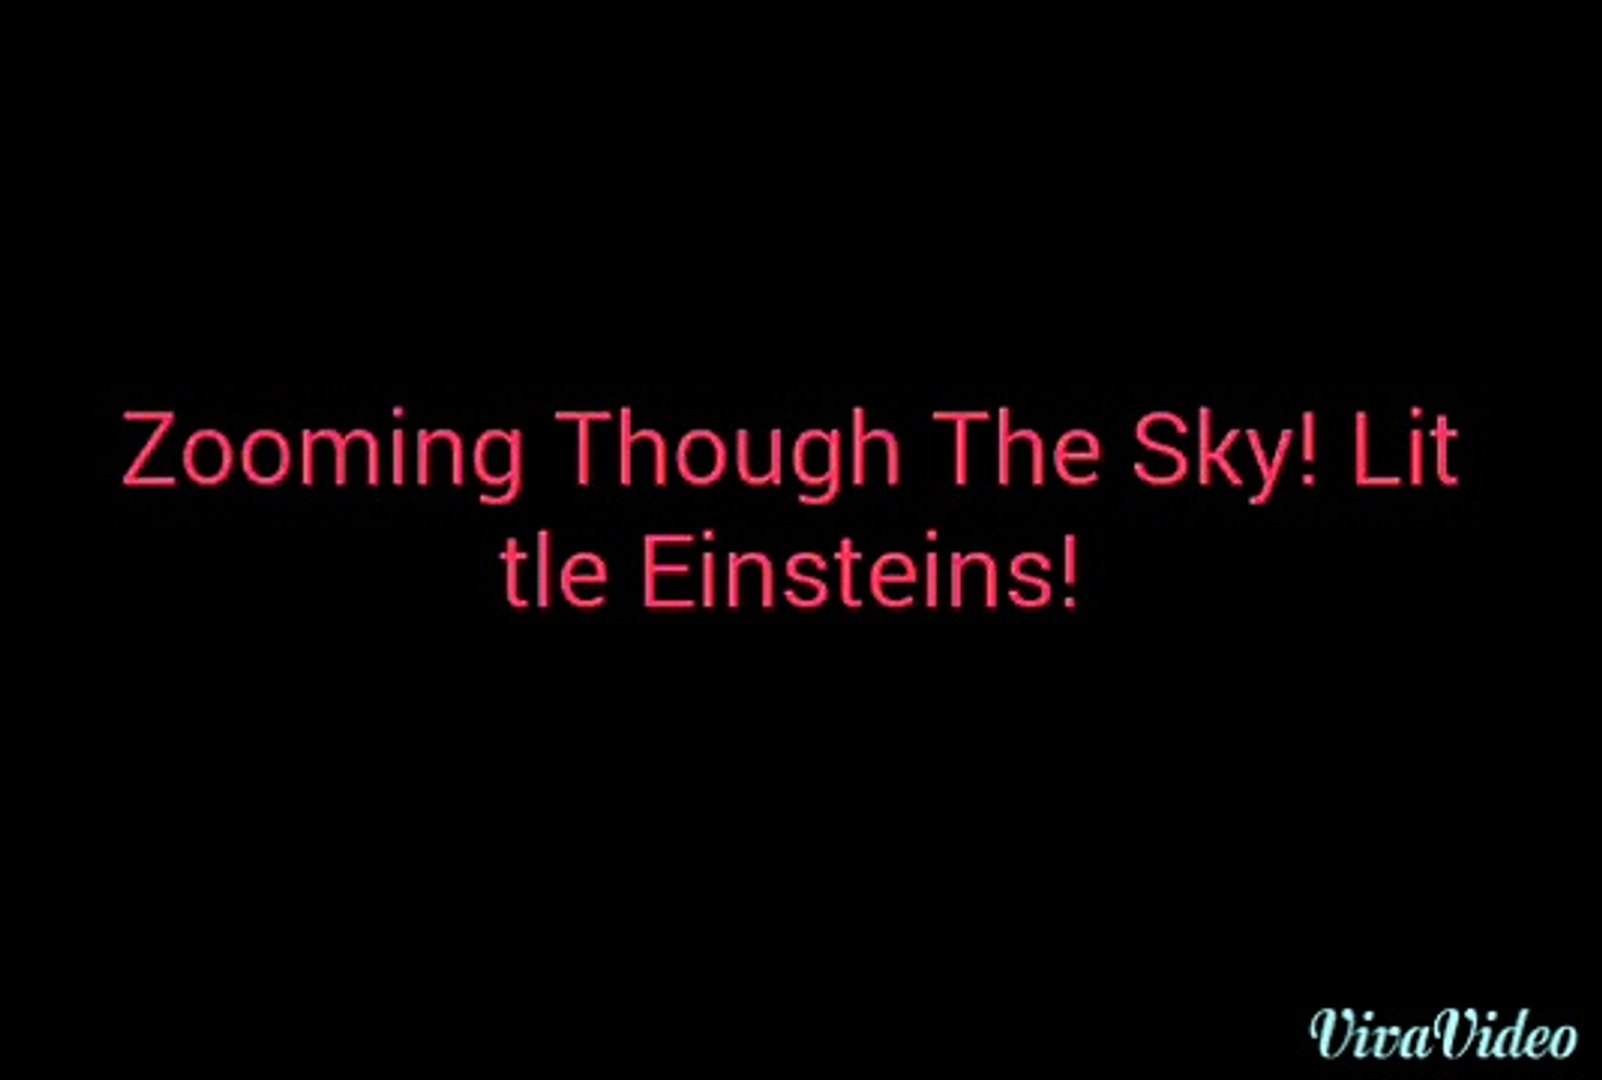 Little Einsteins Music Remix